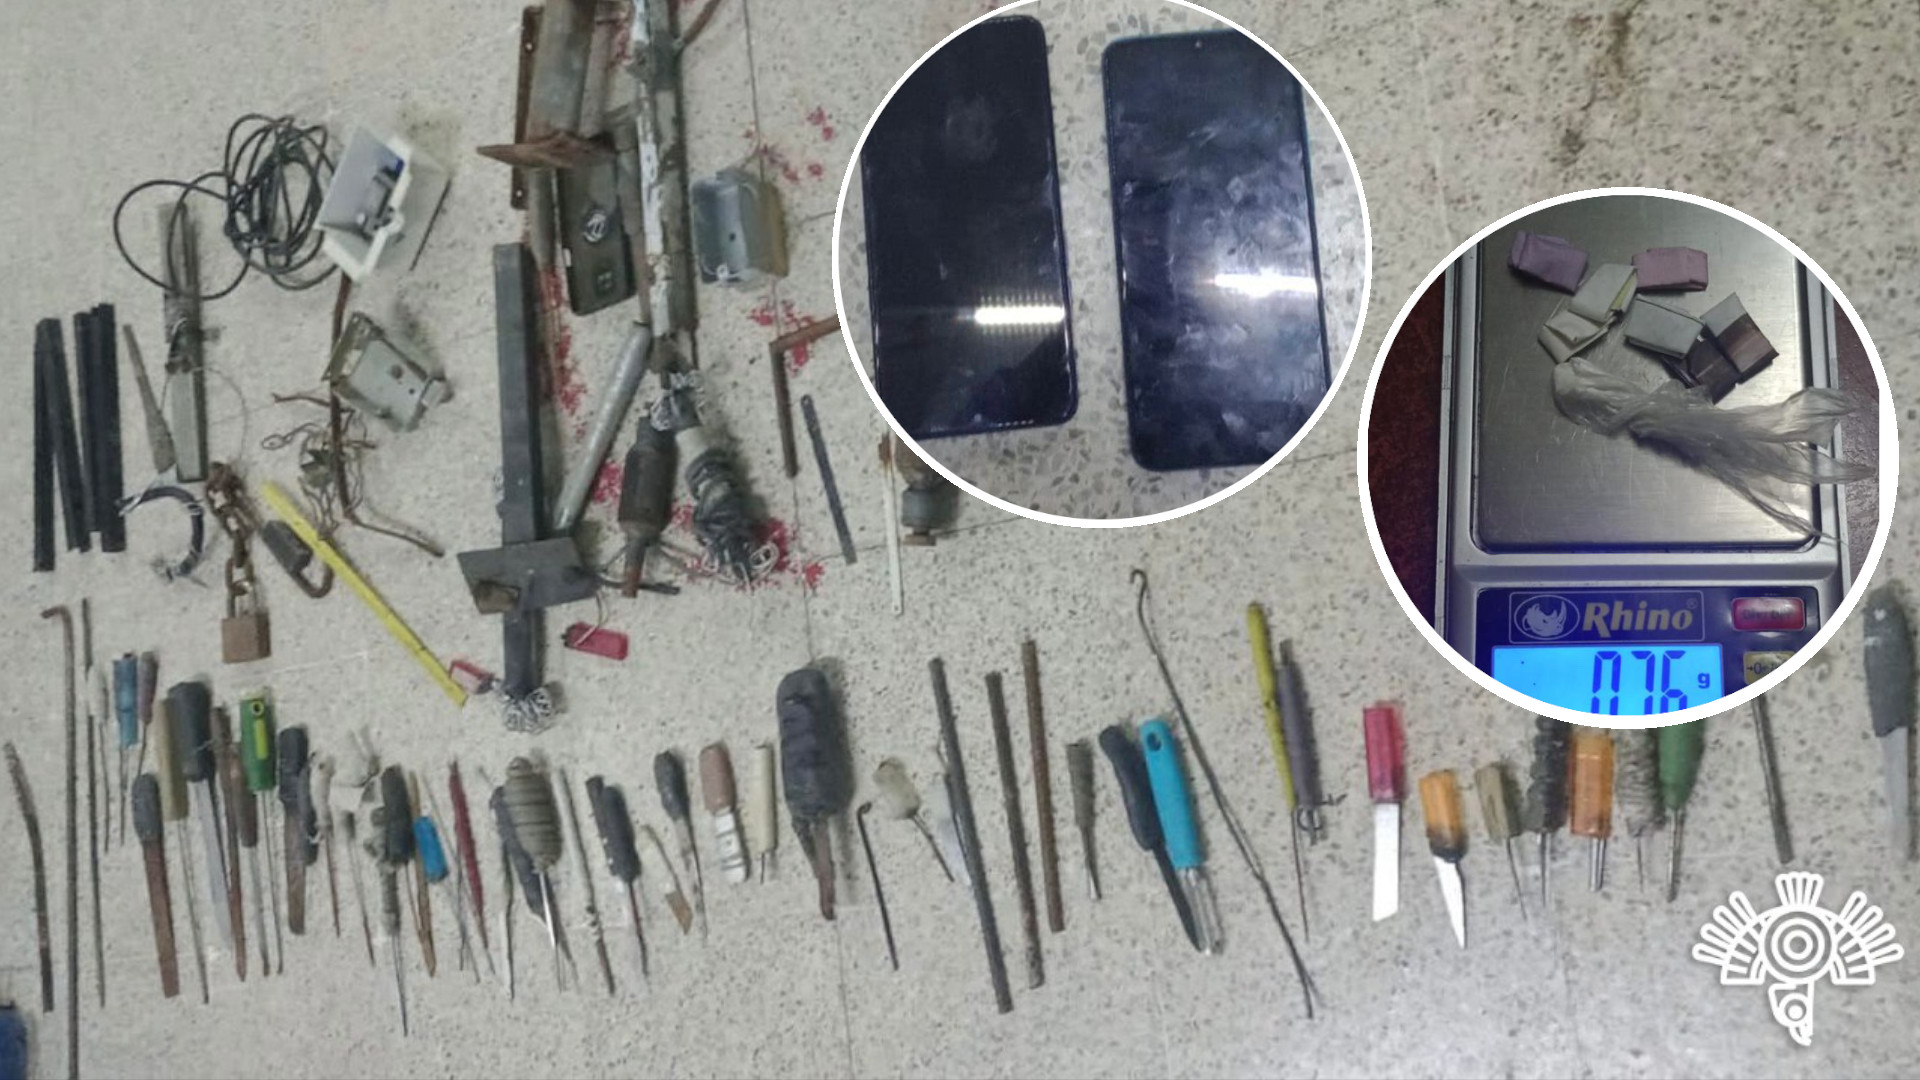 Desde celulares hasta armas hechizas son encontradas en Centro Penitenciario Puebla